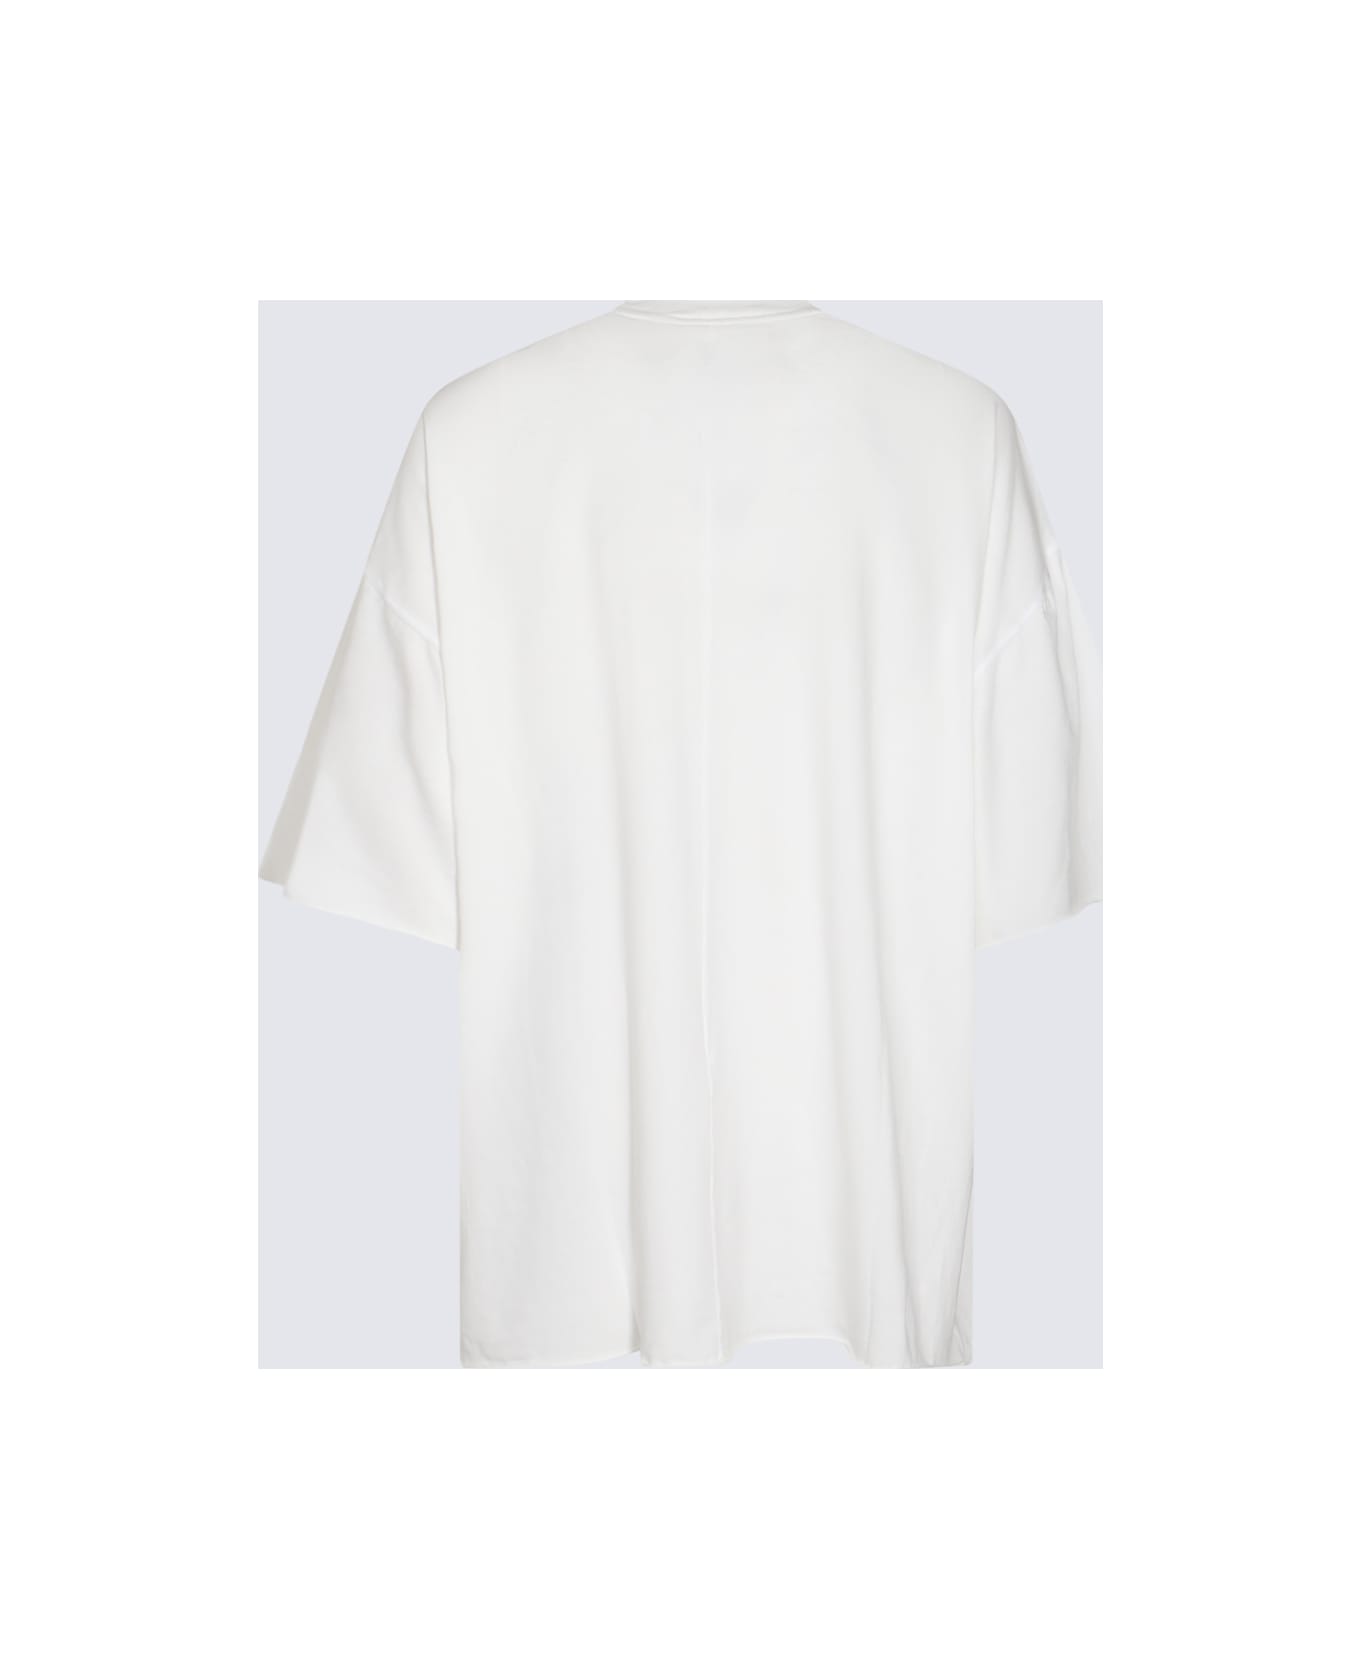 DRKSHDW White Cotton T-shirt - White